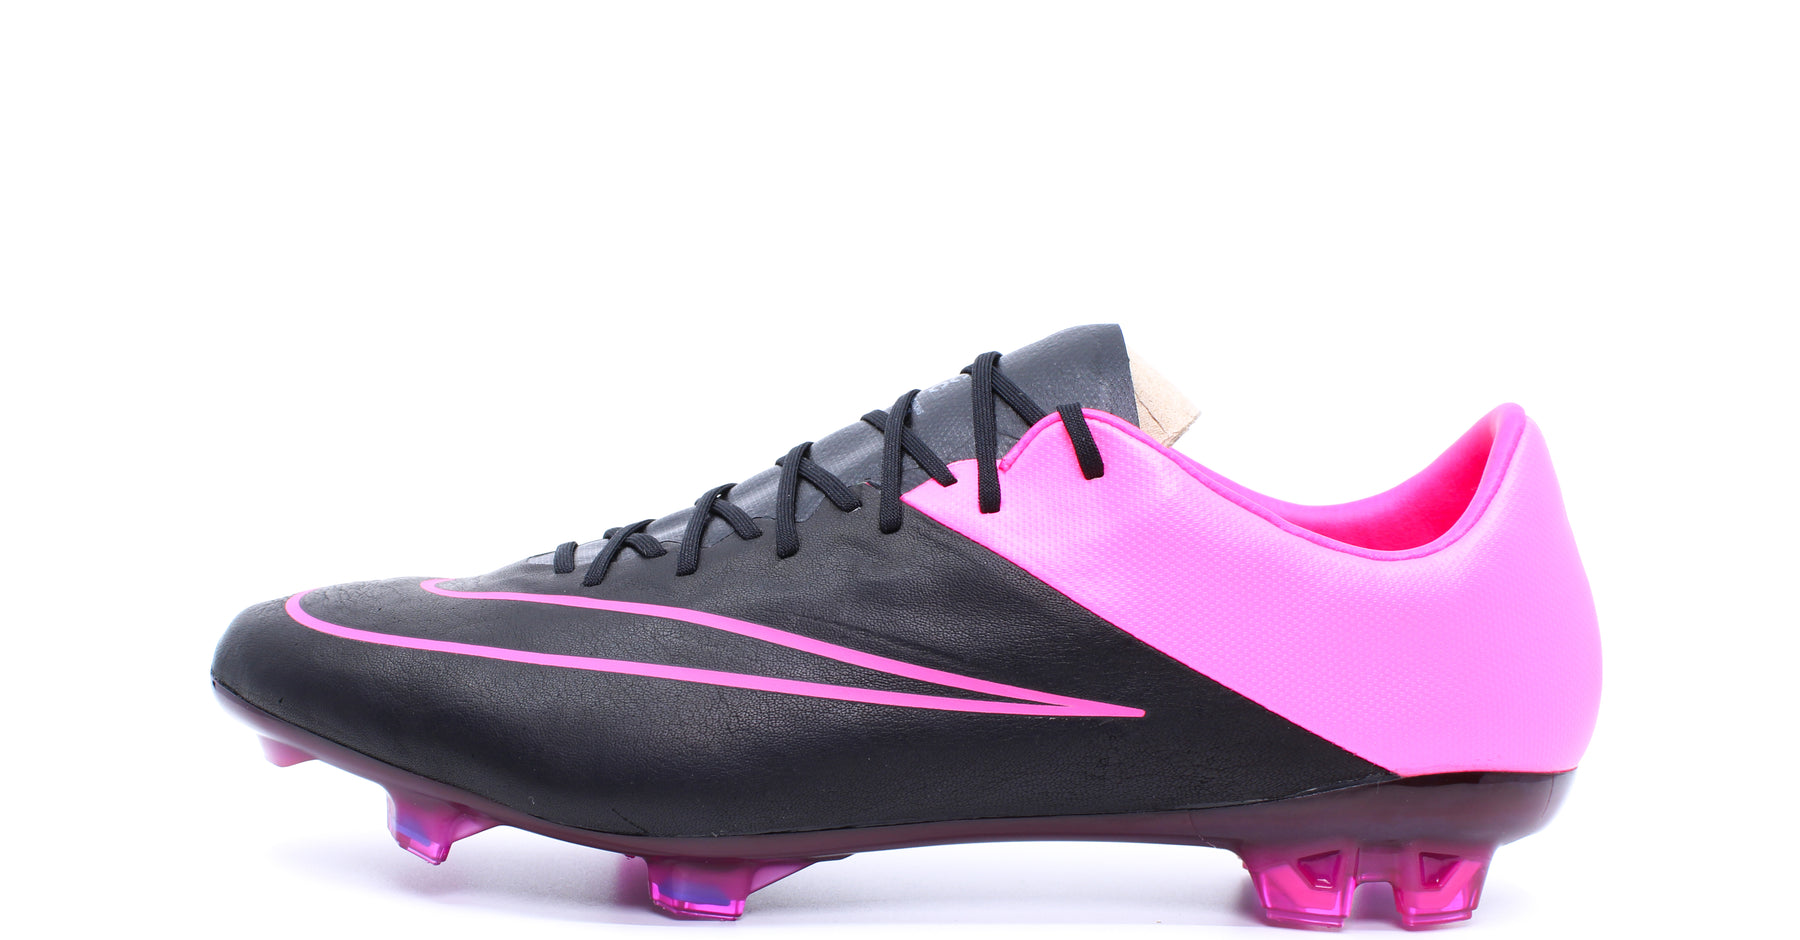 Nike Vapor 10 Leather FG Black/Hyper Pink (747565-006) – Retro Soccer